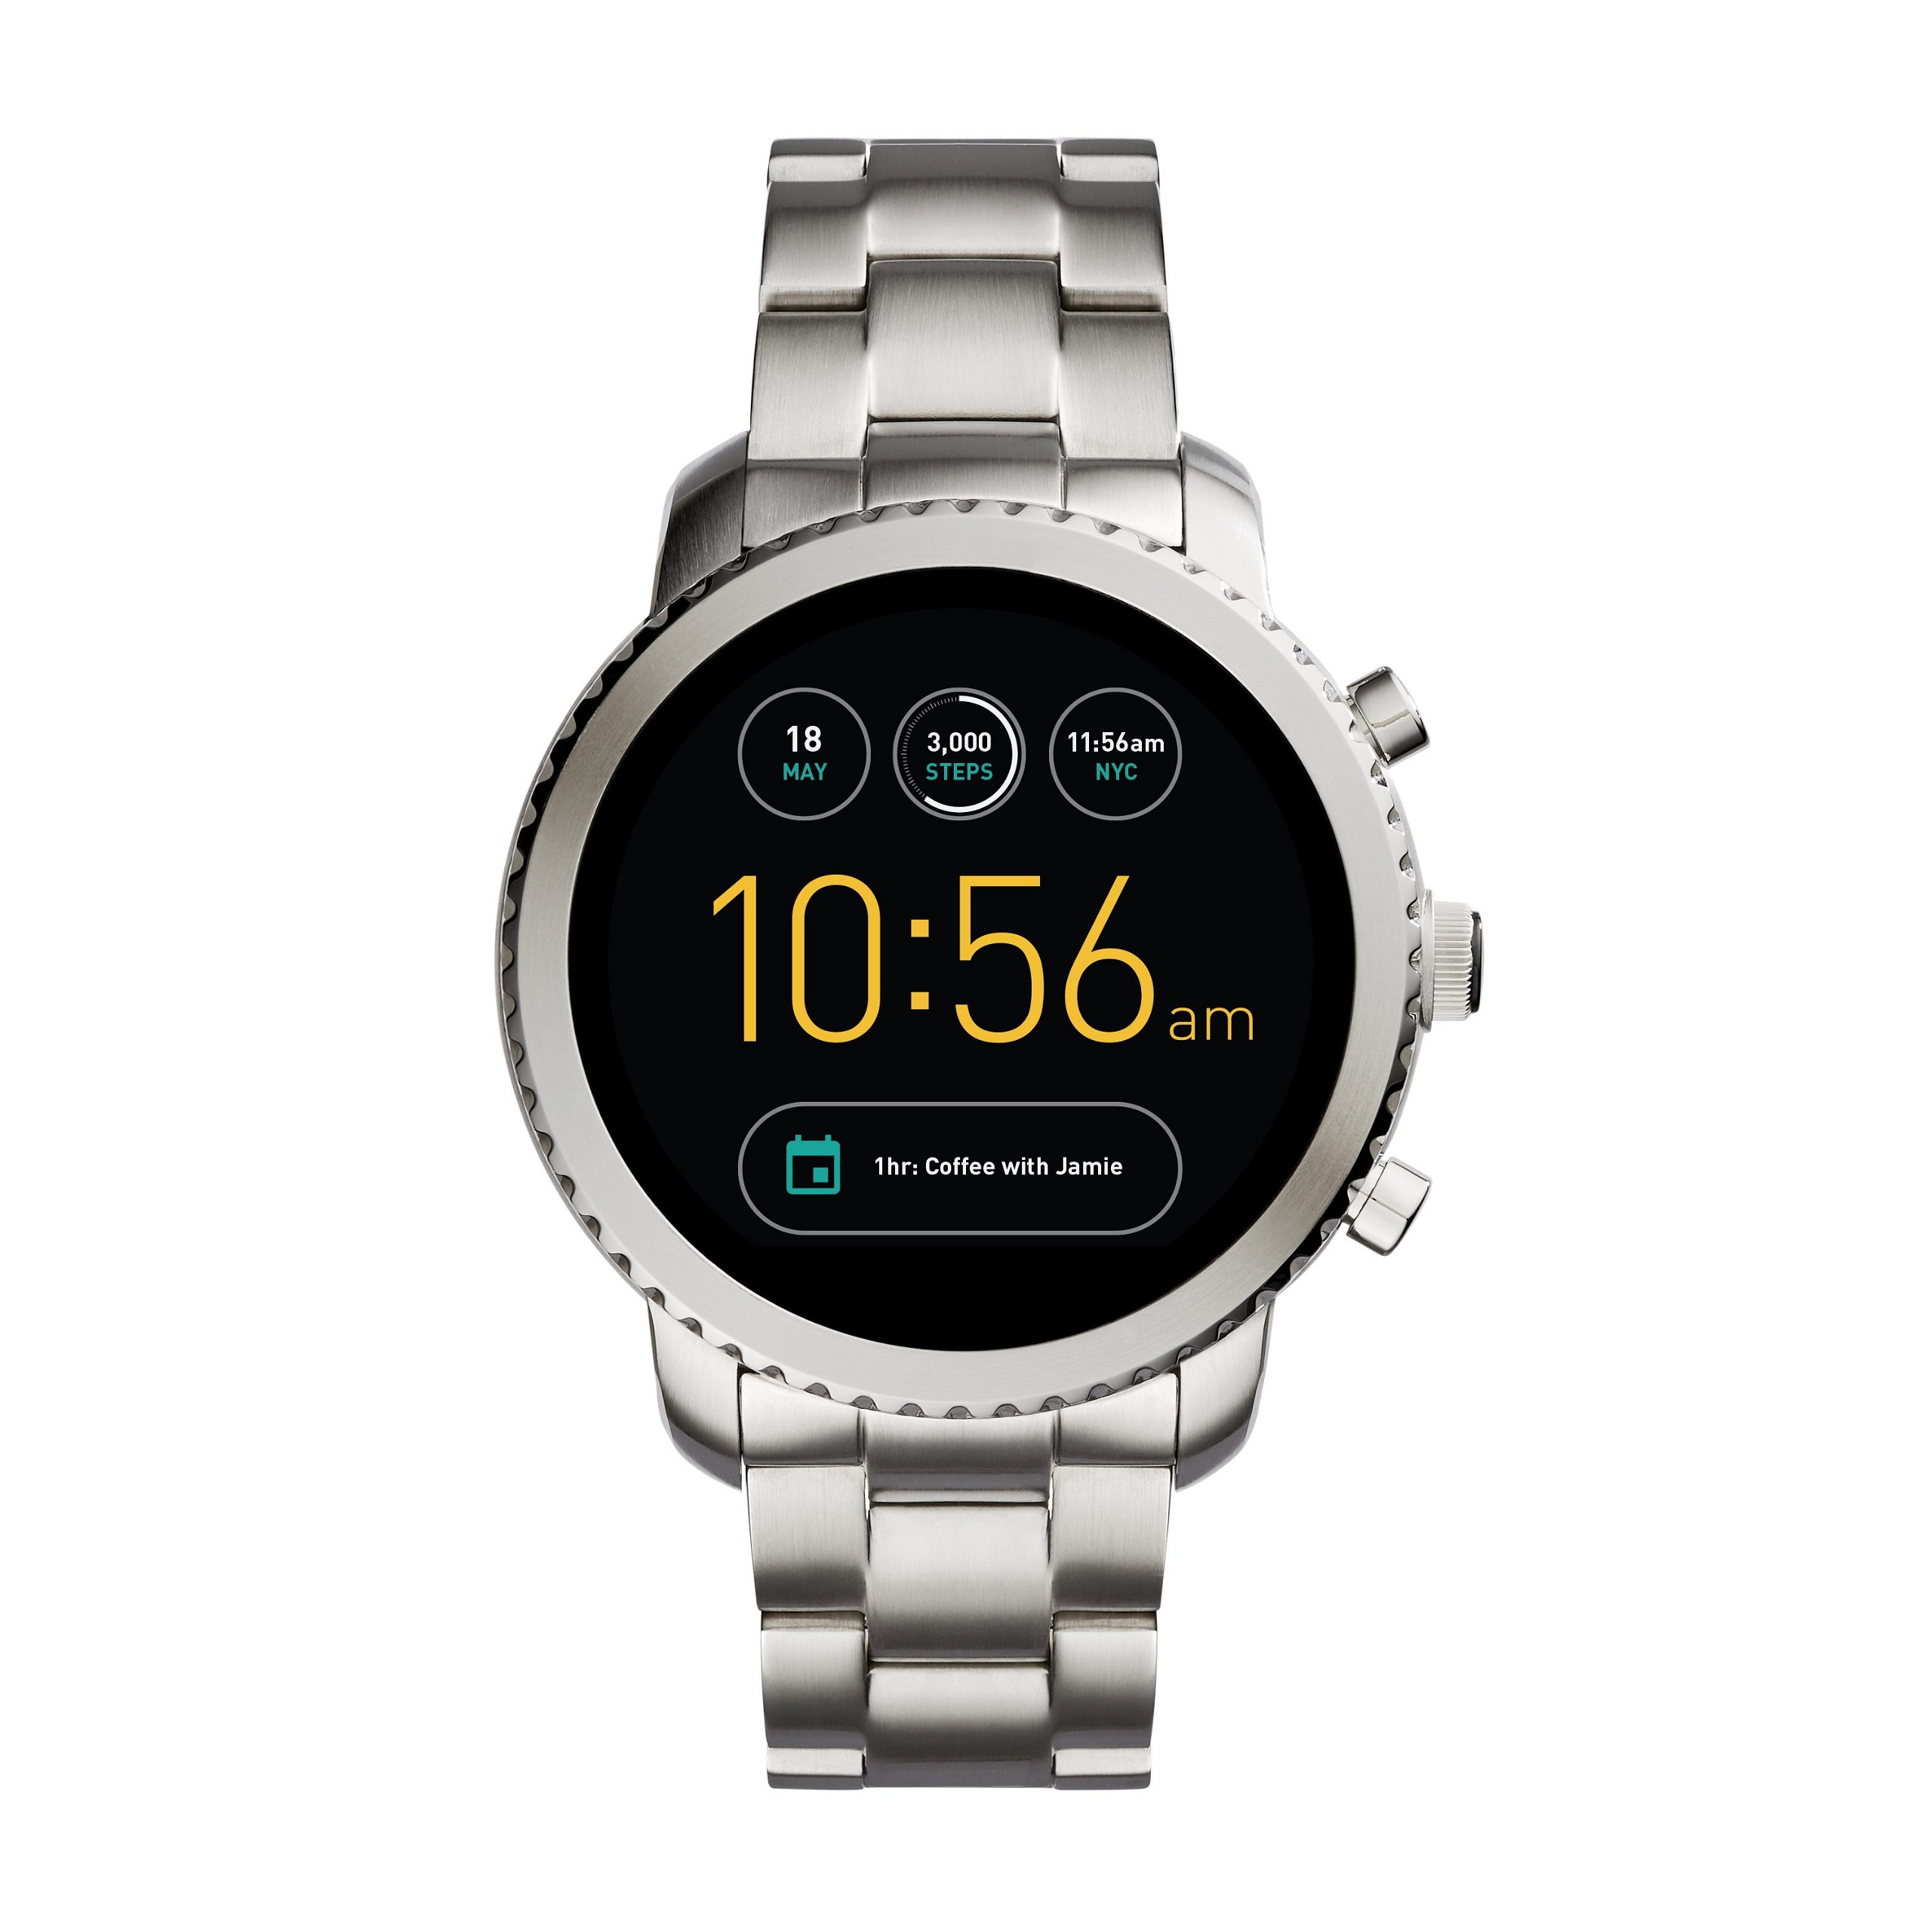 Relojes de Fossil también tendrán Android Wear 2.0